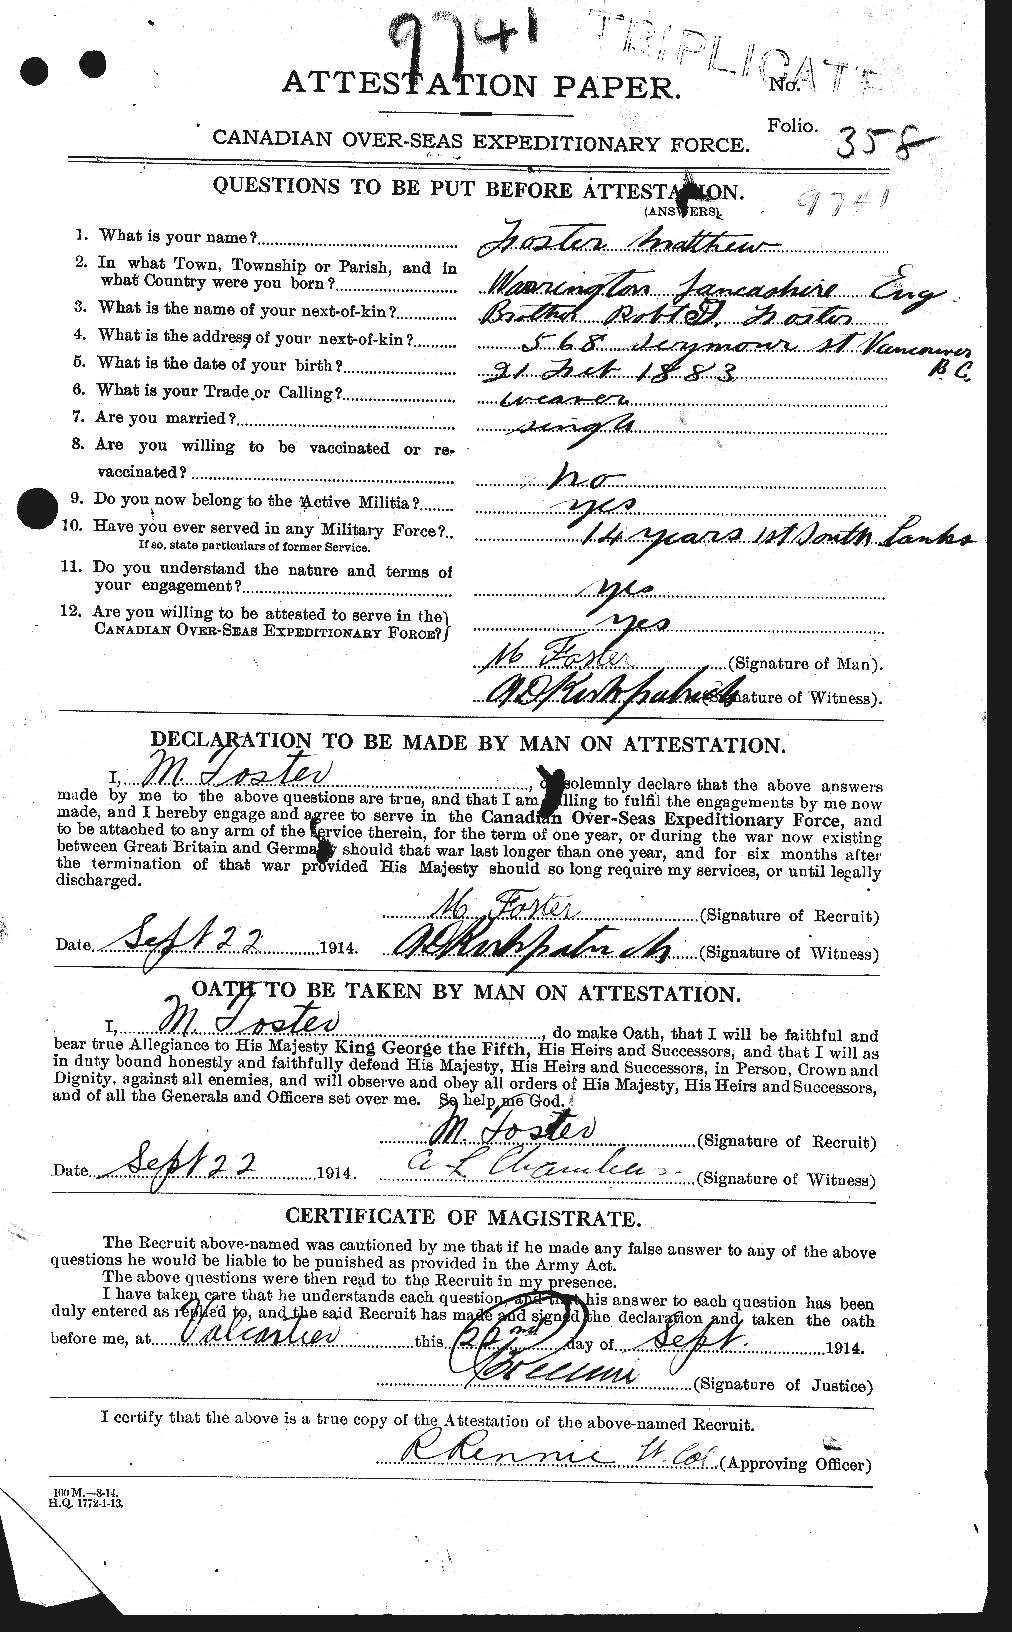 Dossiers du Personnel de la Première Guerre mondiale - CEC 333421a